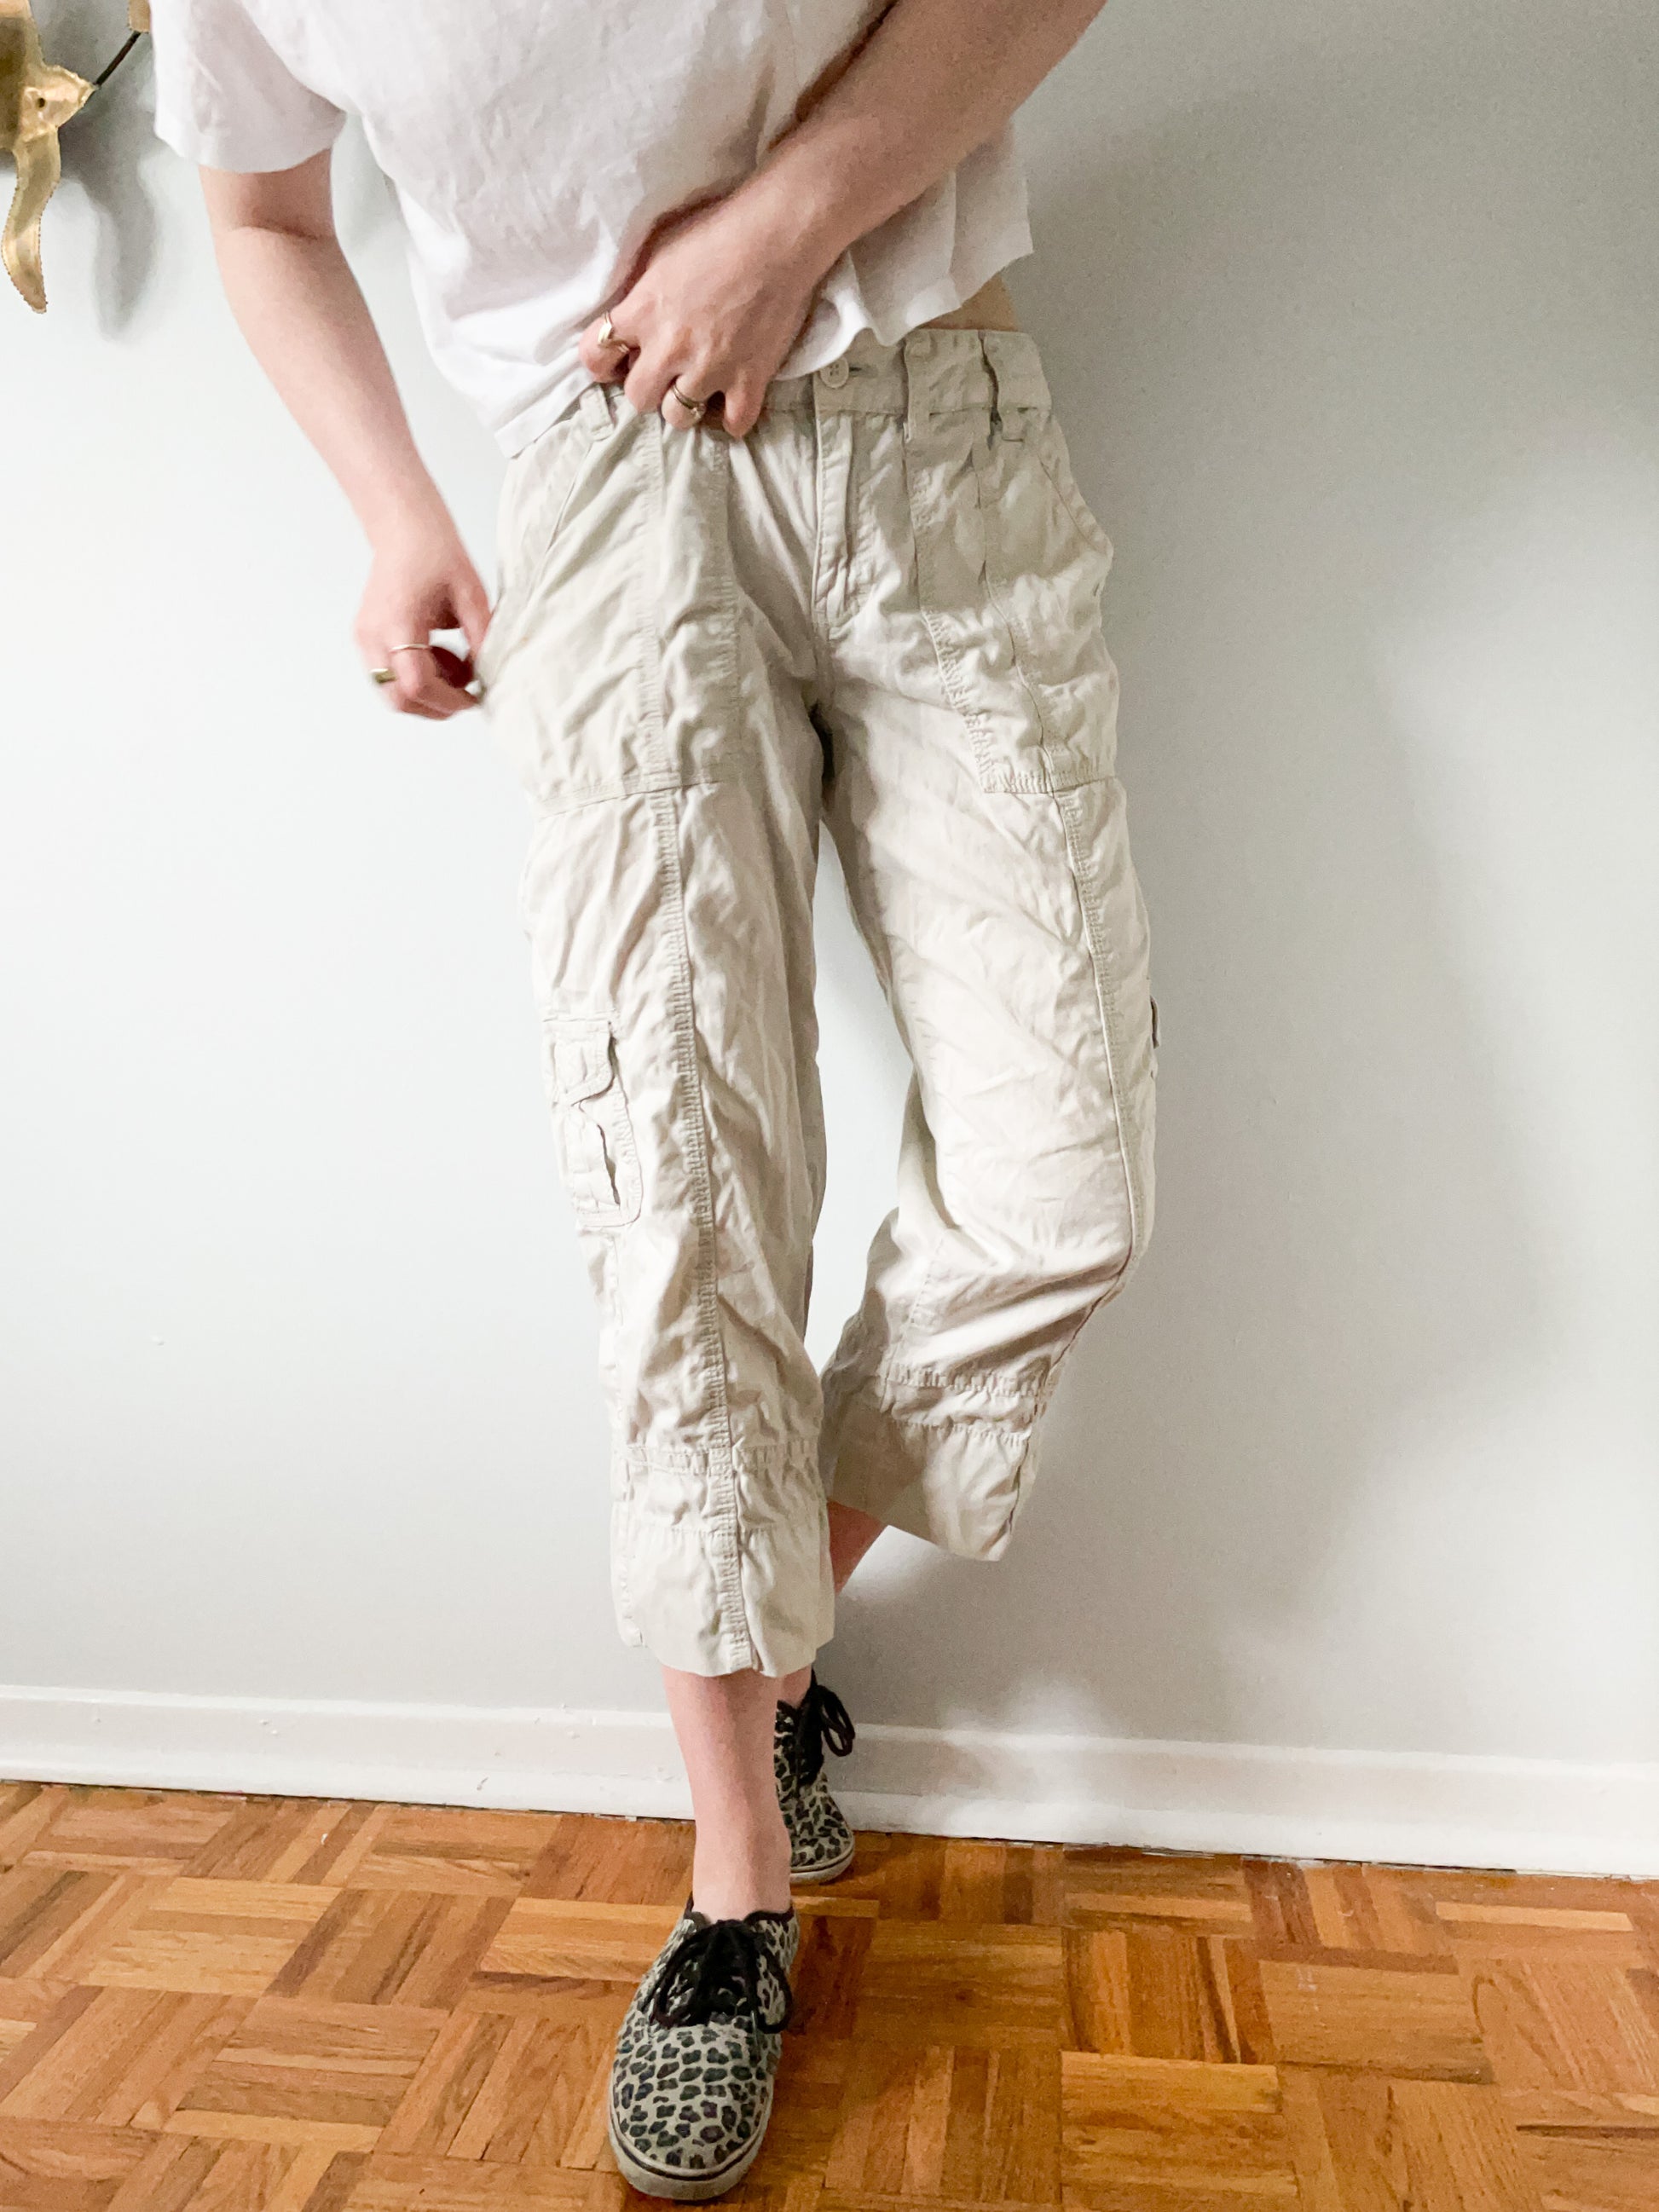 Capri Pants for Women Cotton Linen Plus Size Cargo Pants Capris